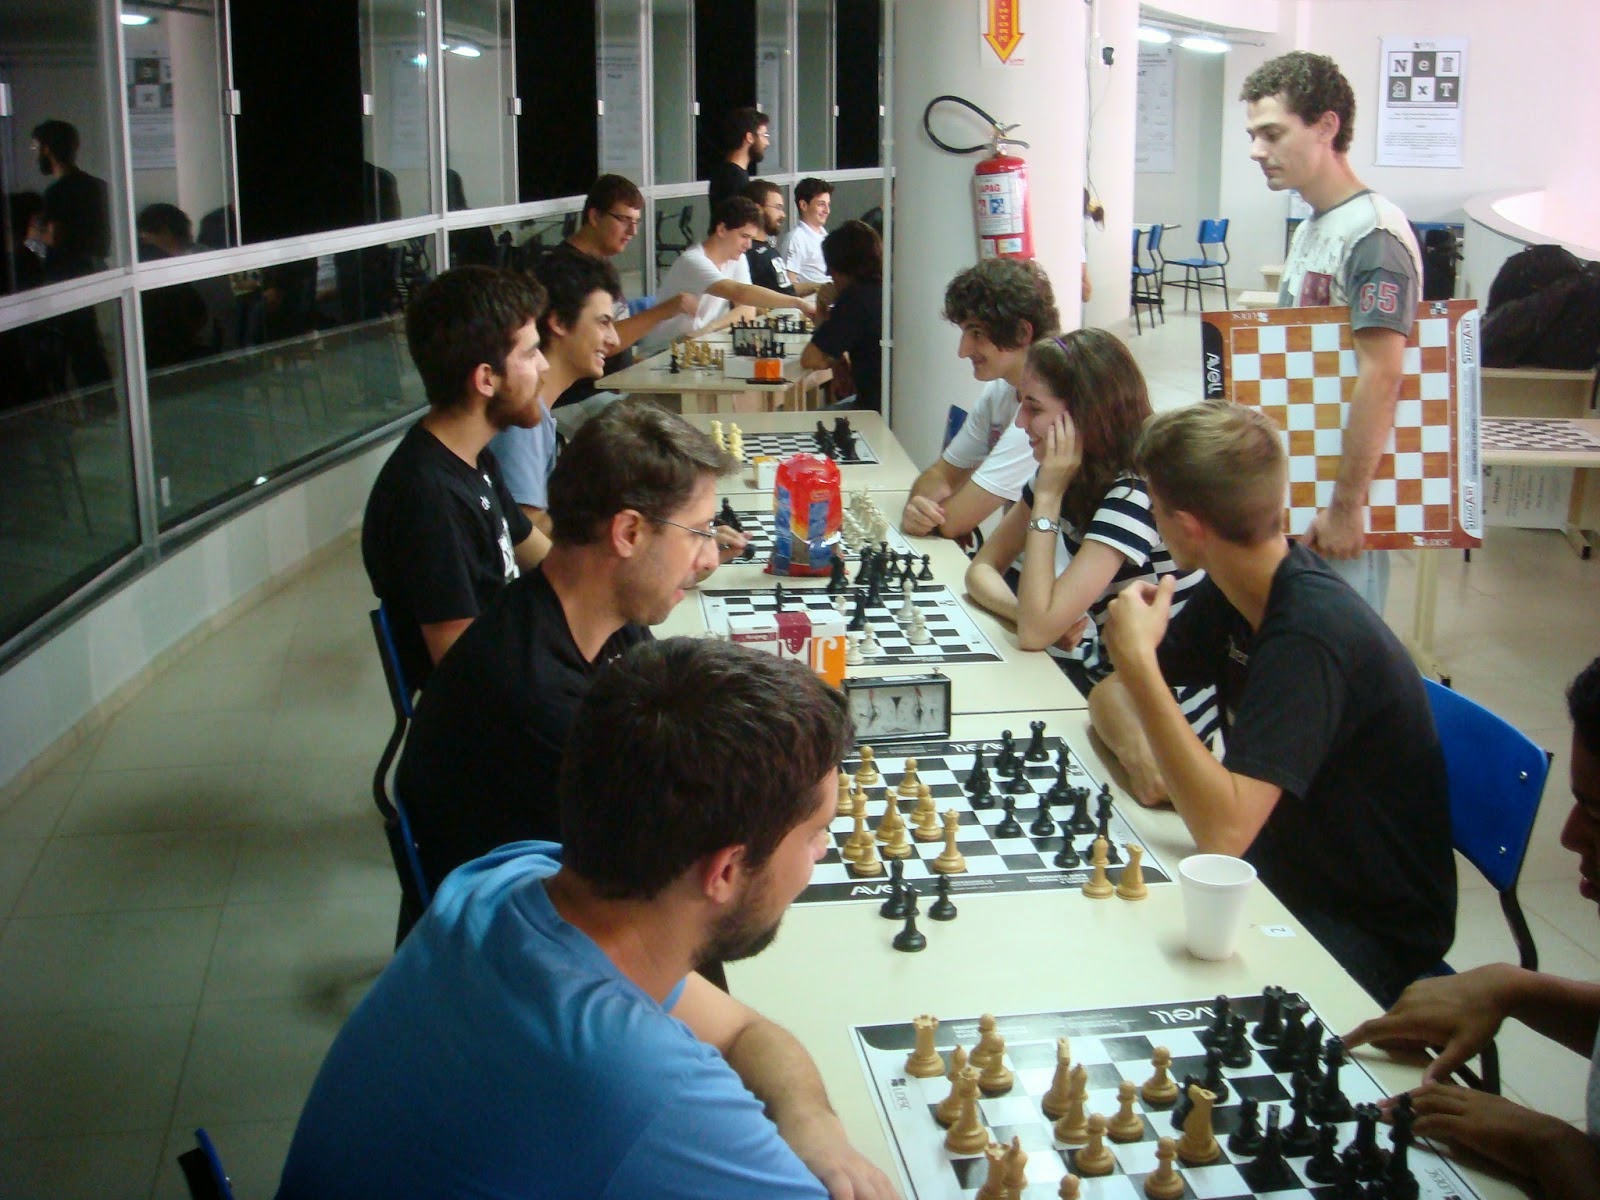 Clube de Xadrez de Curitiba - Chess And Card Club in Centro